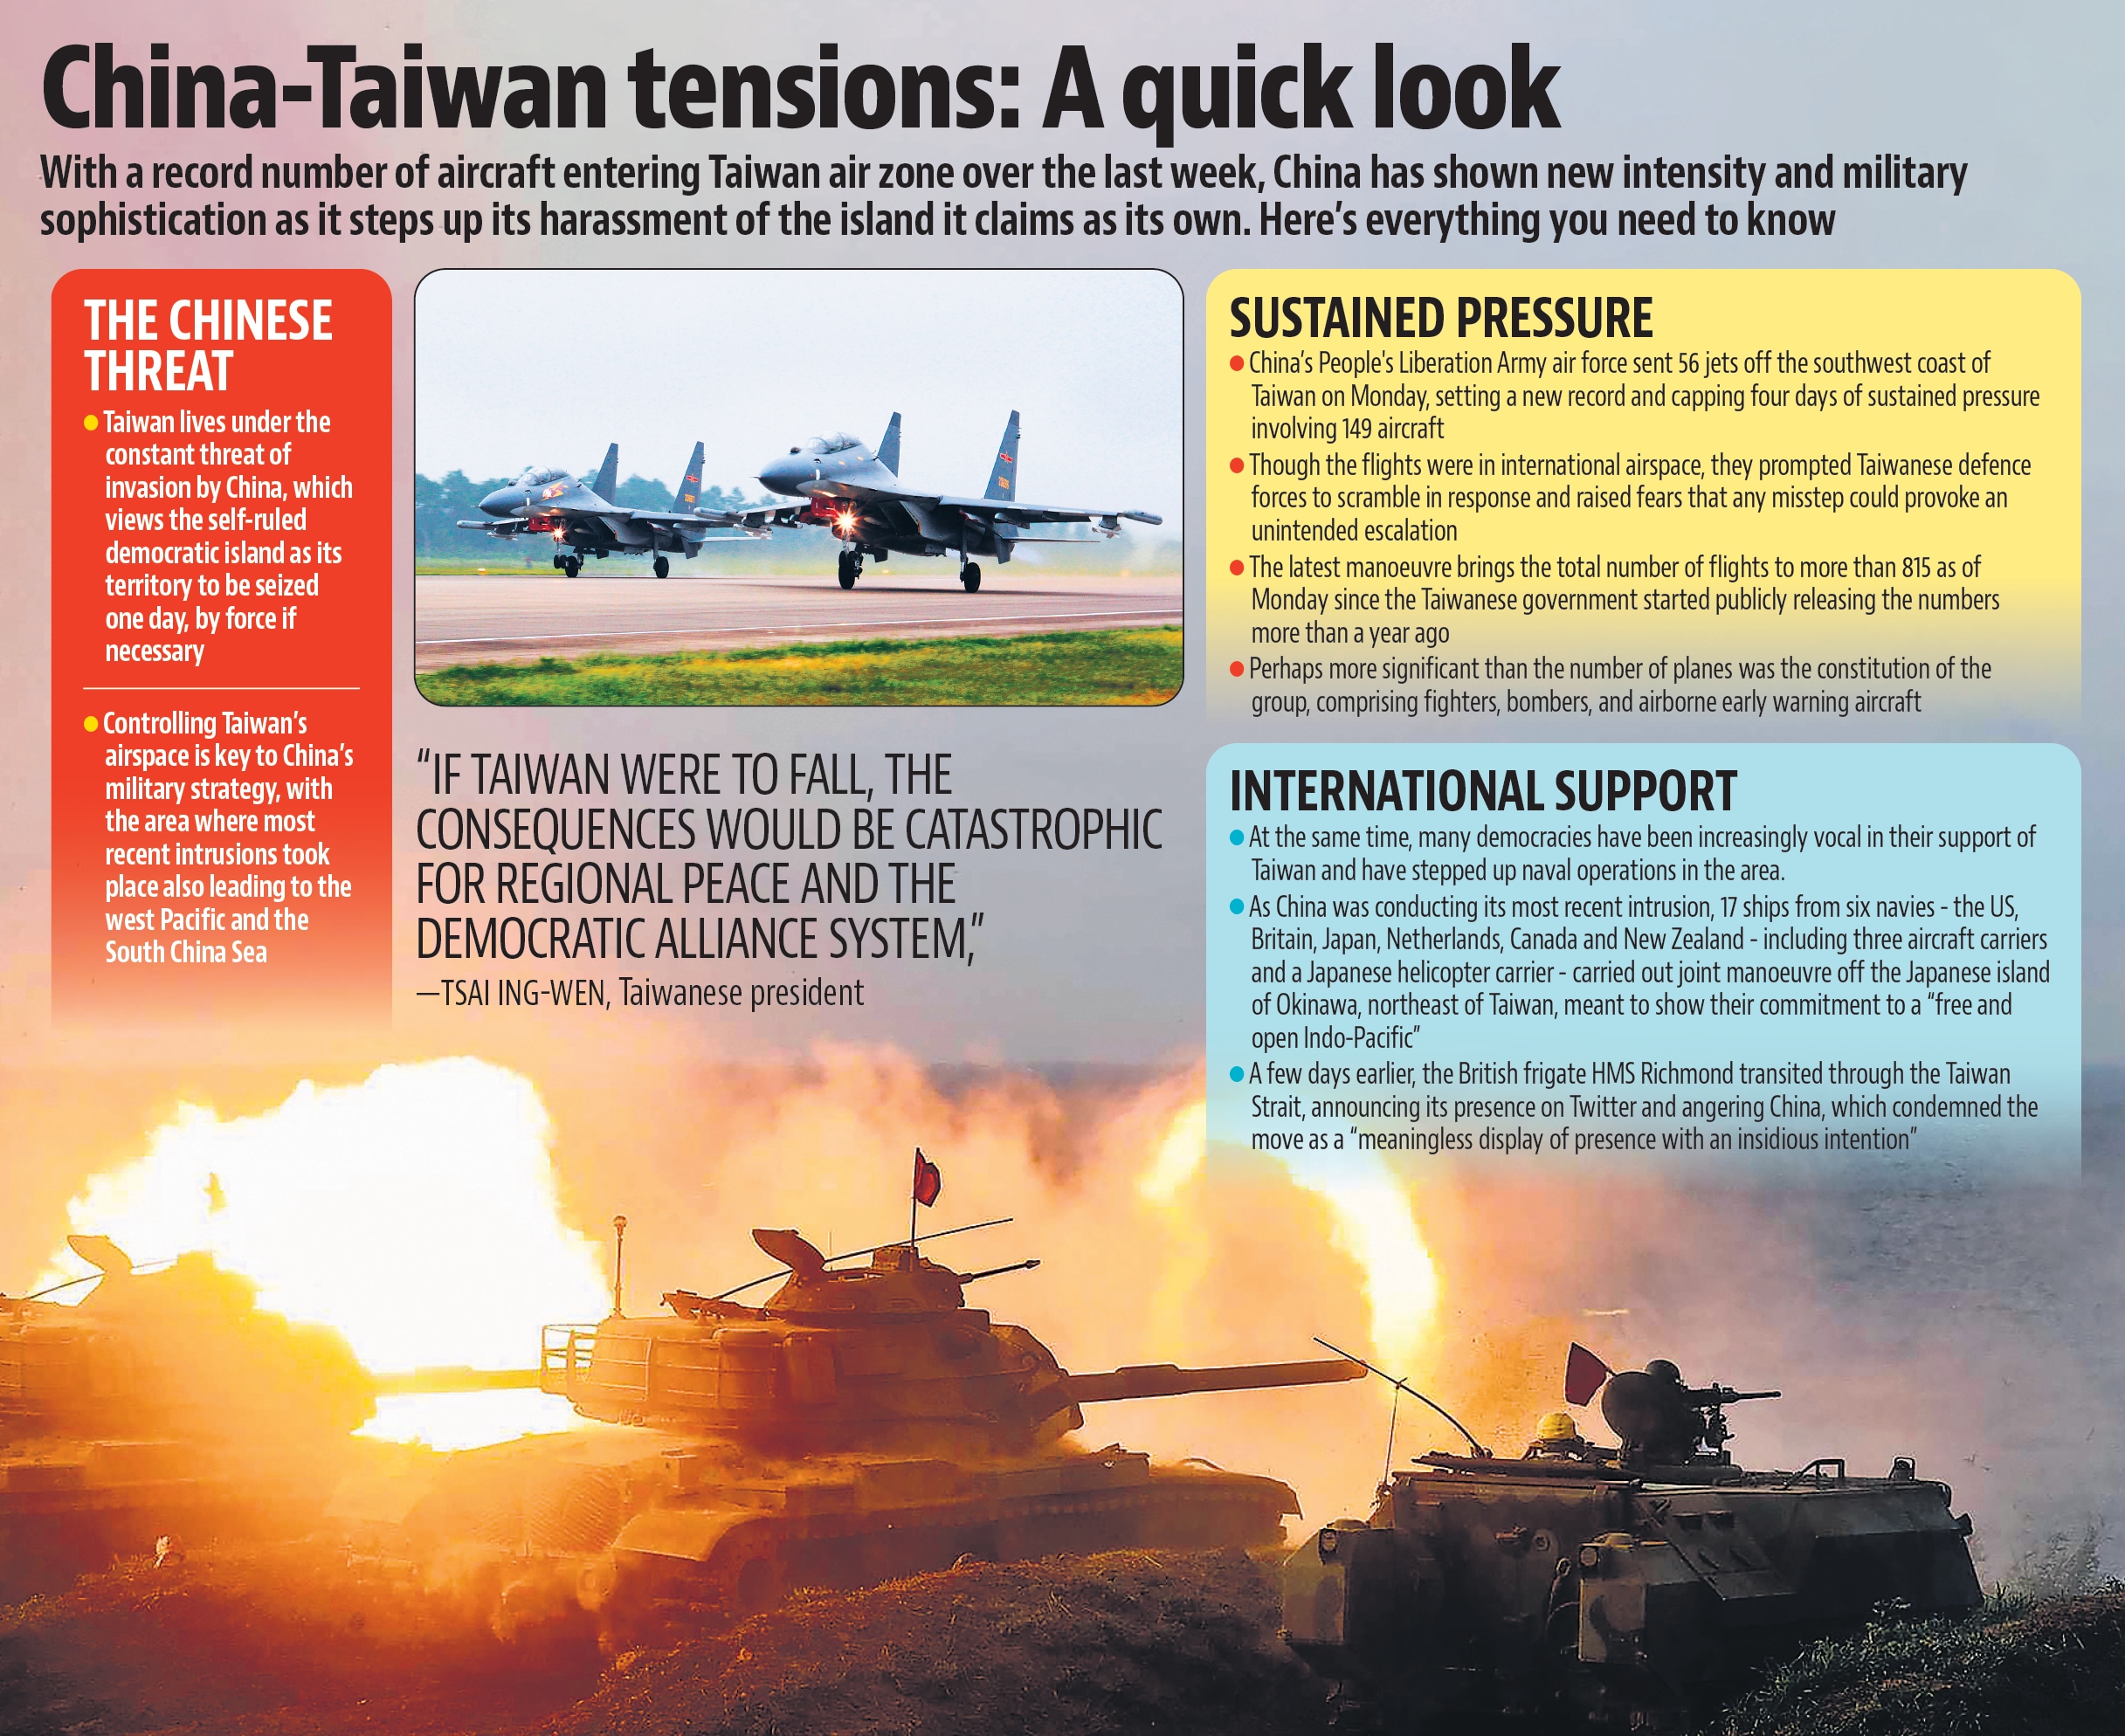 A quick look at China-Taiwan tension